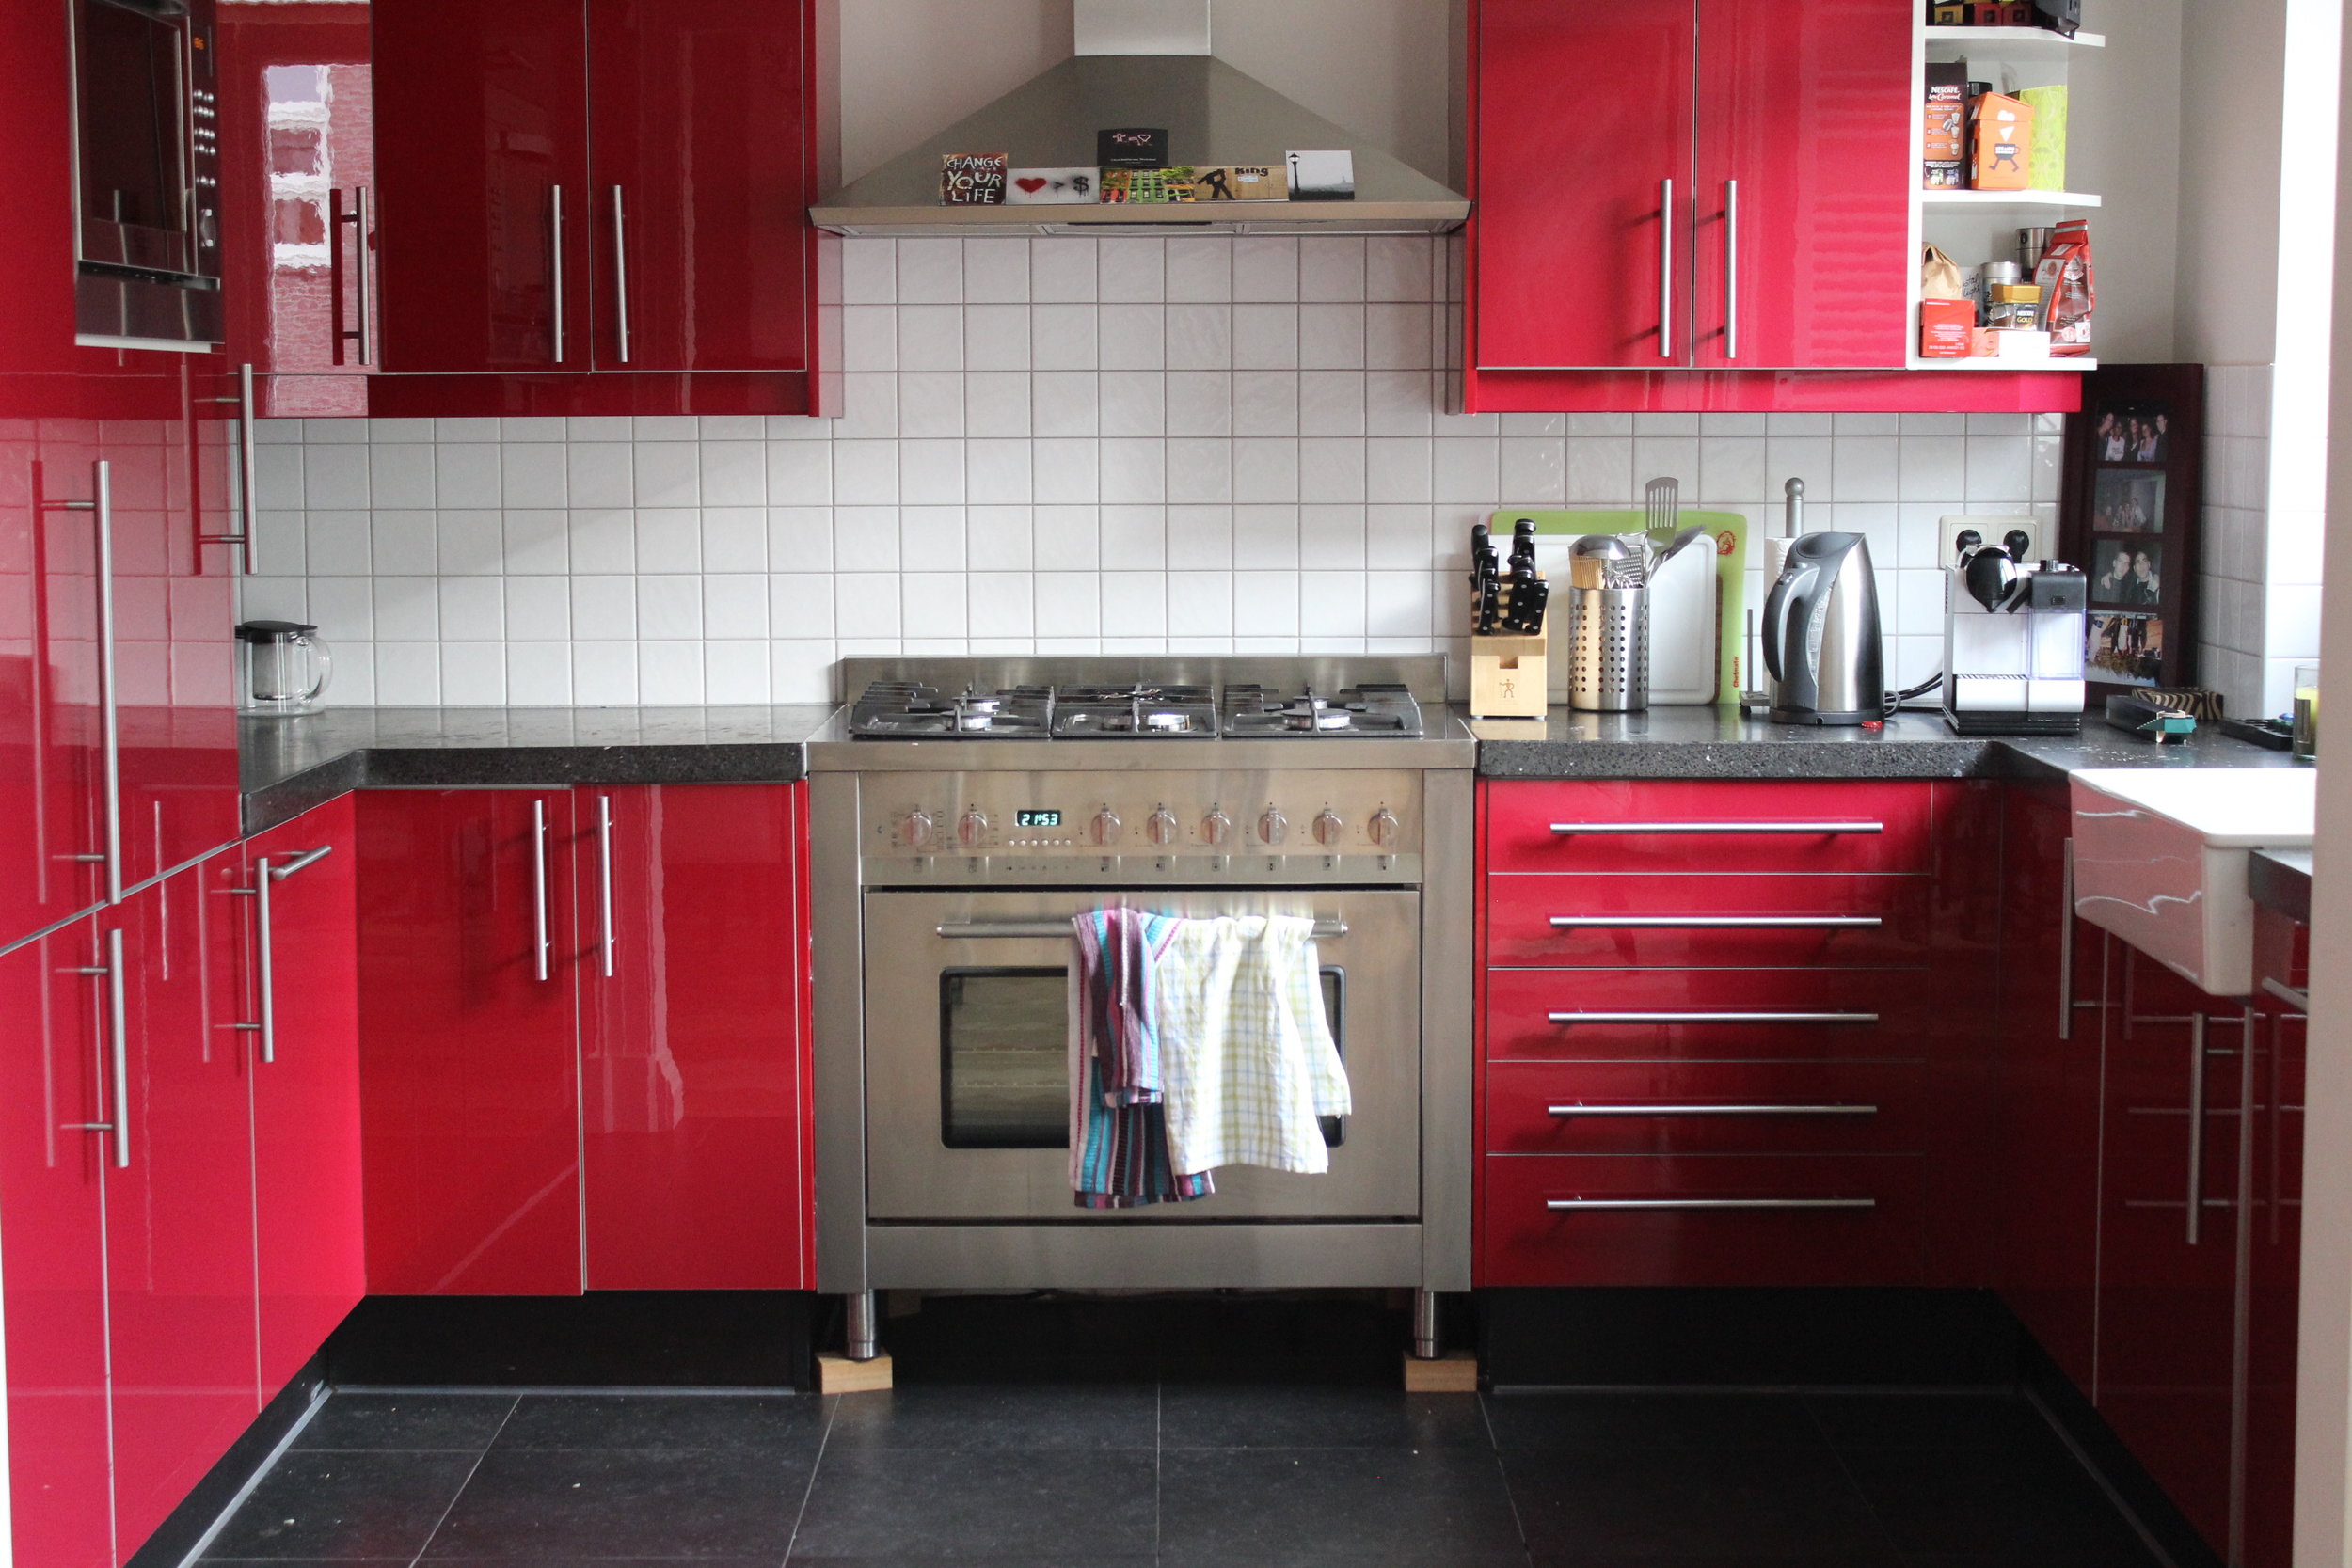 red modern kitchen